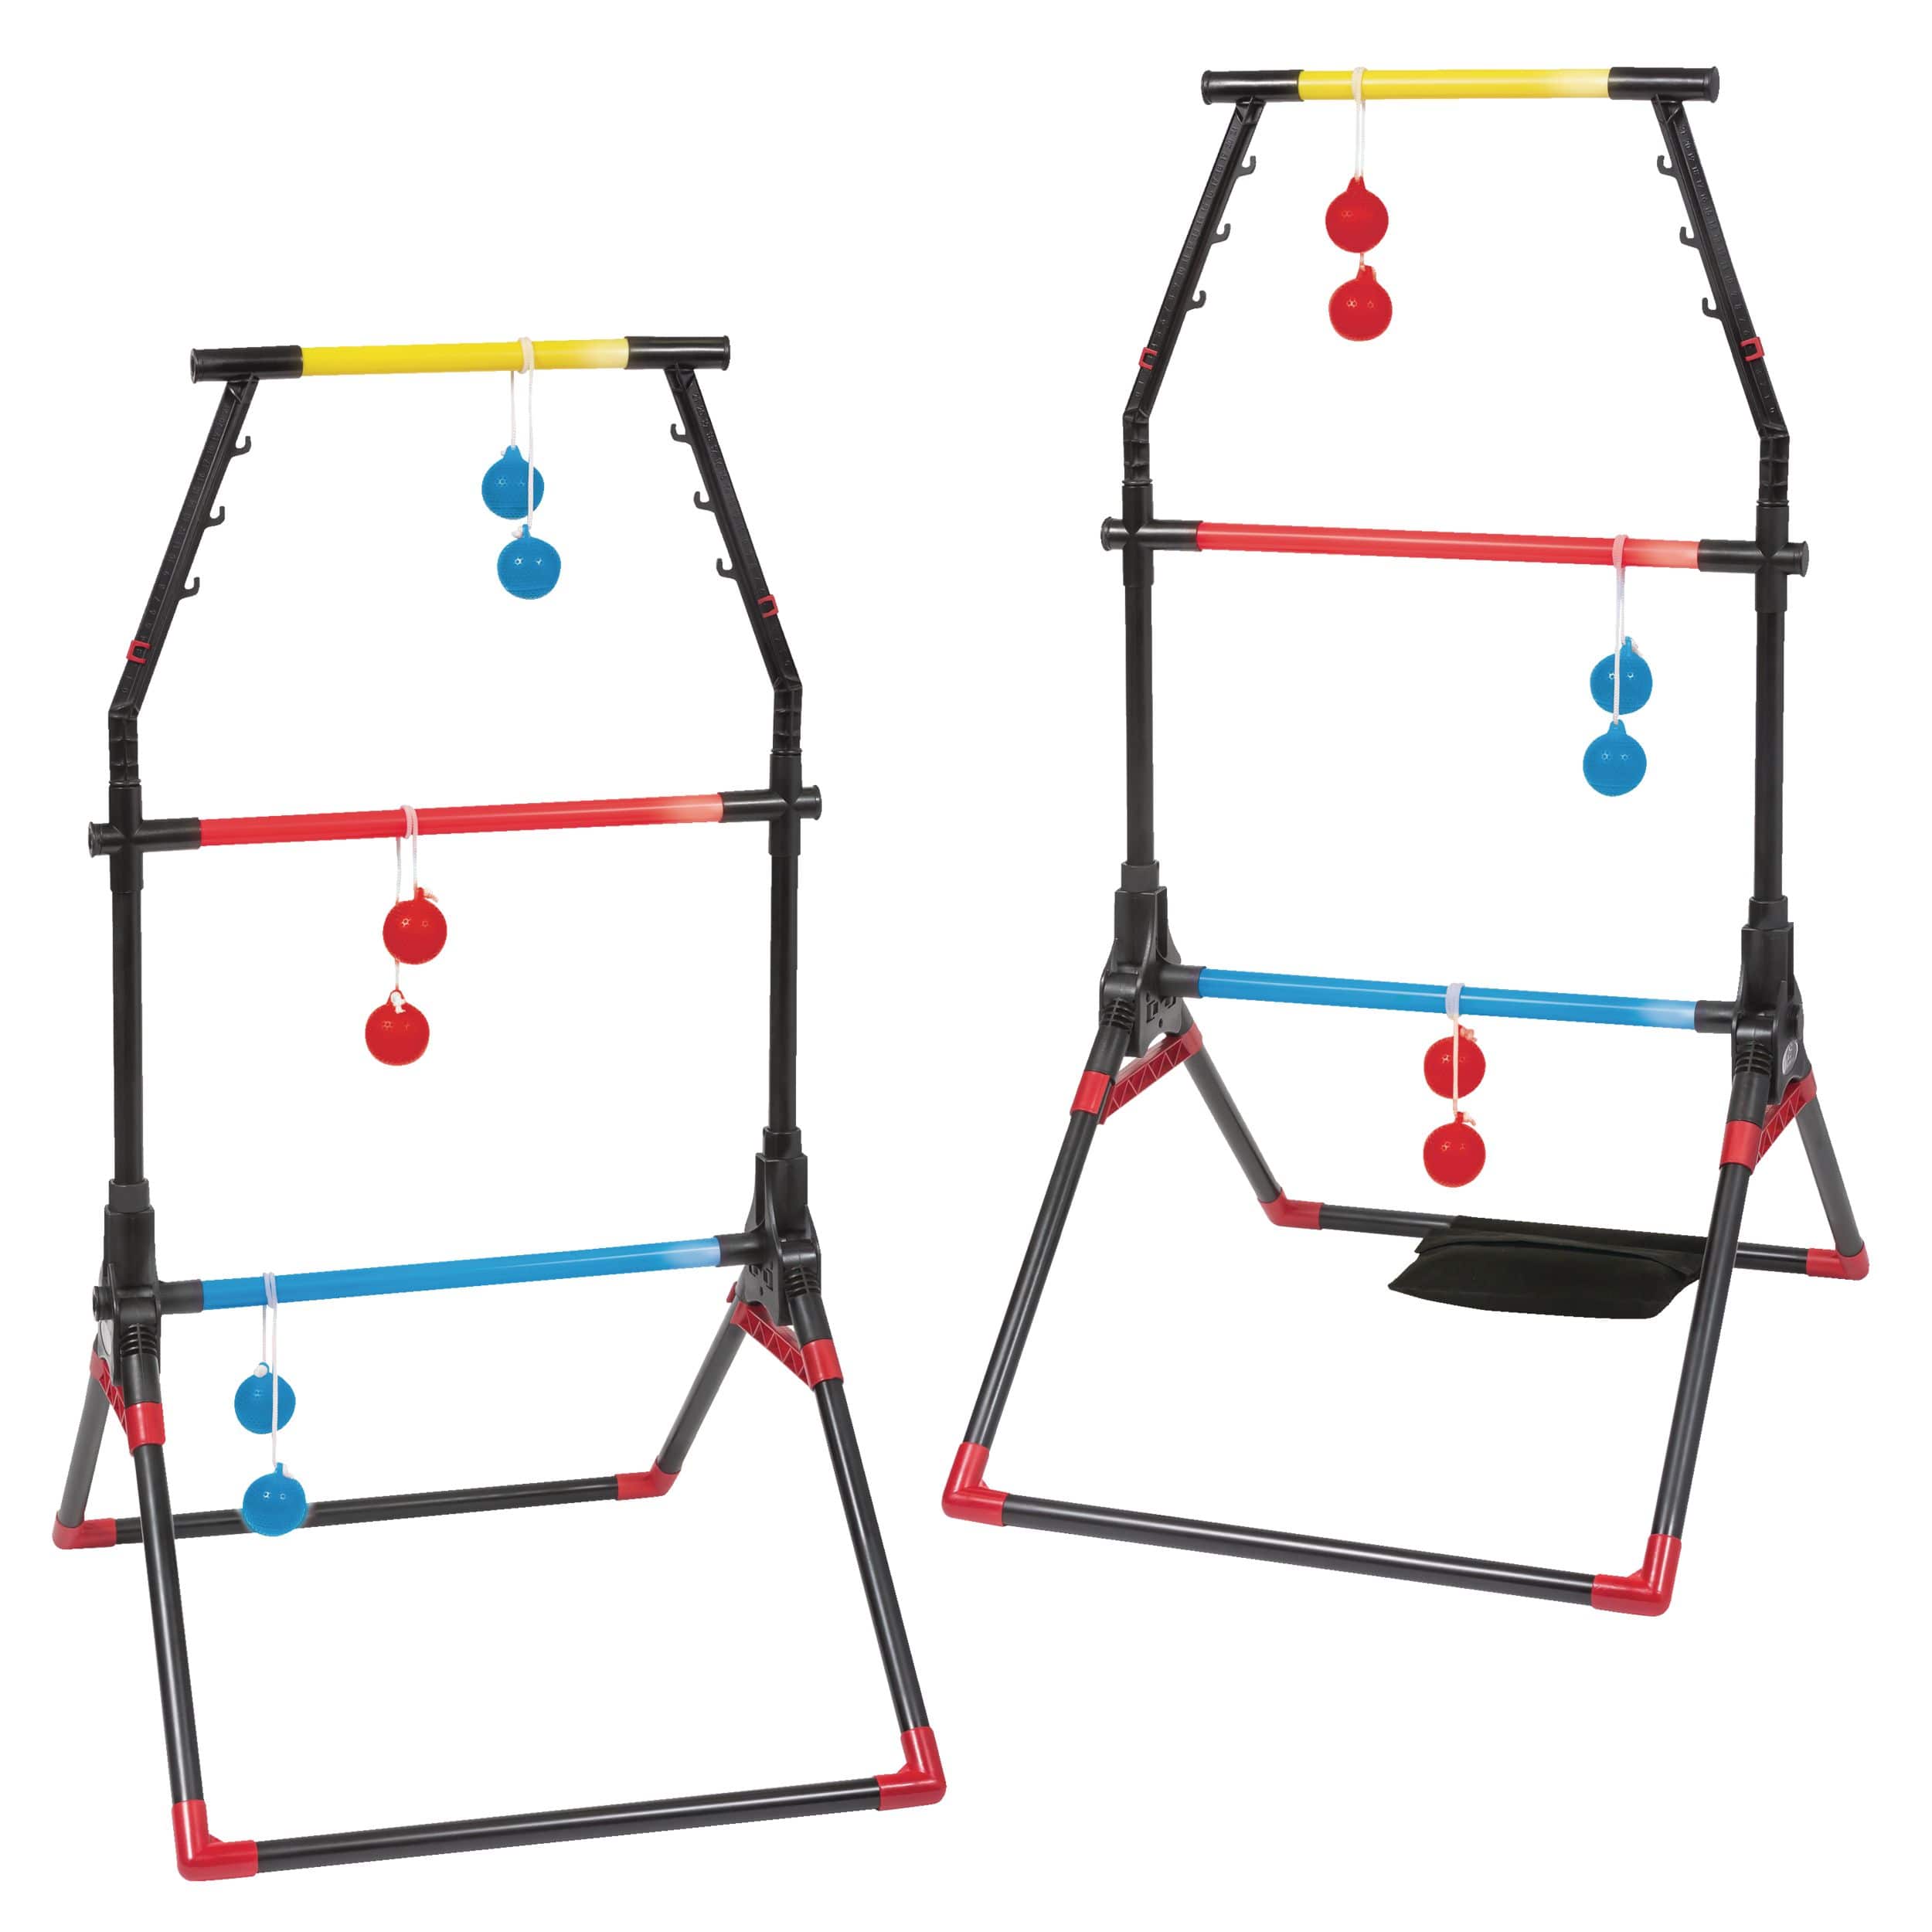 Ladder Balance Game